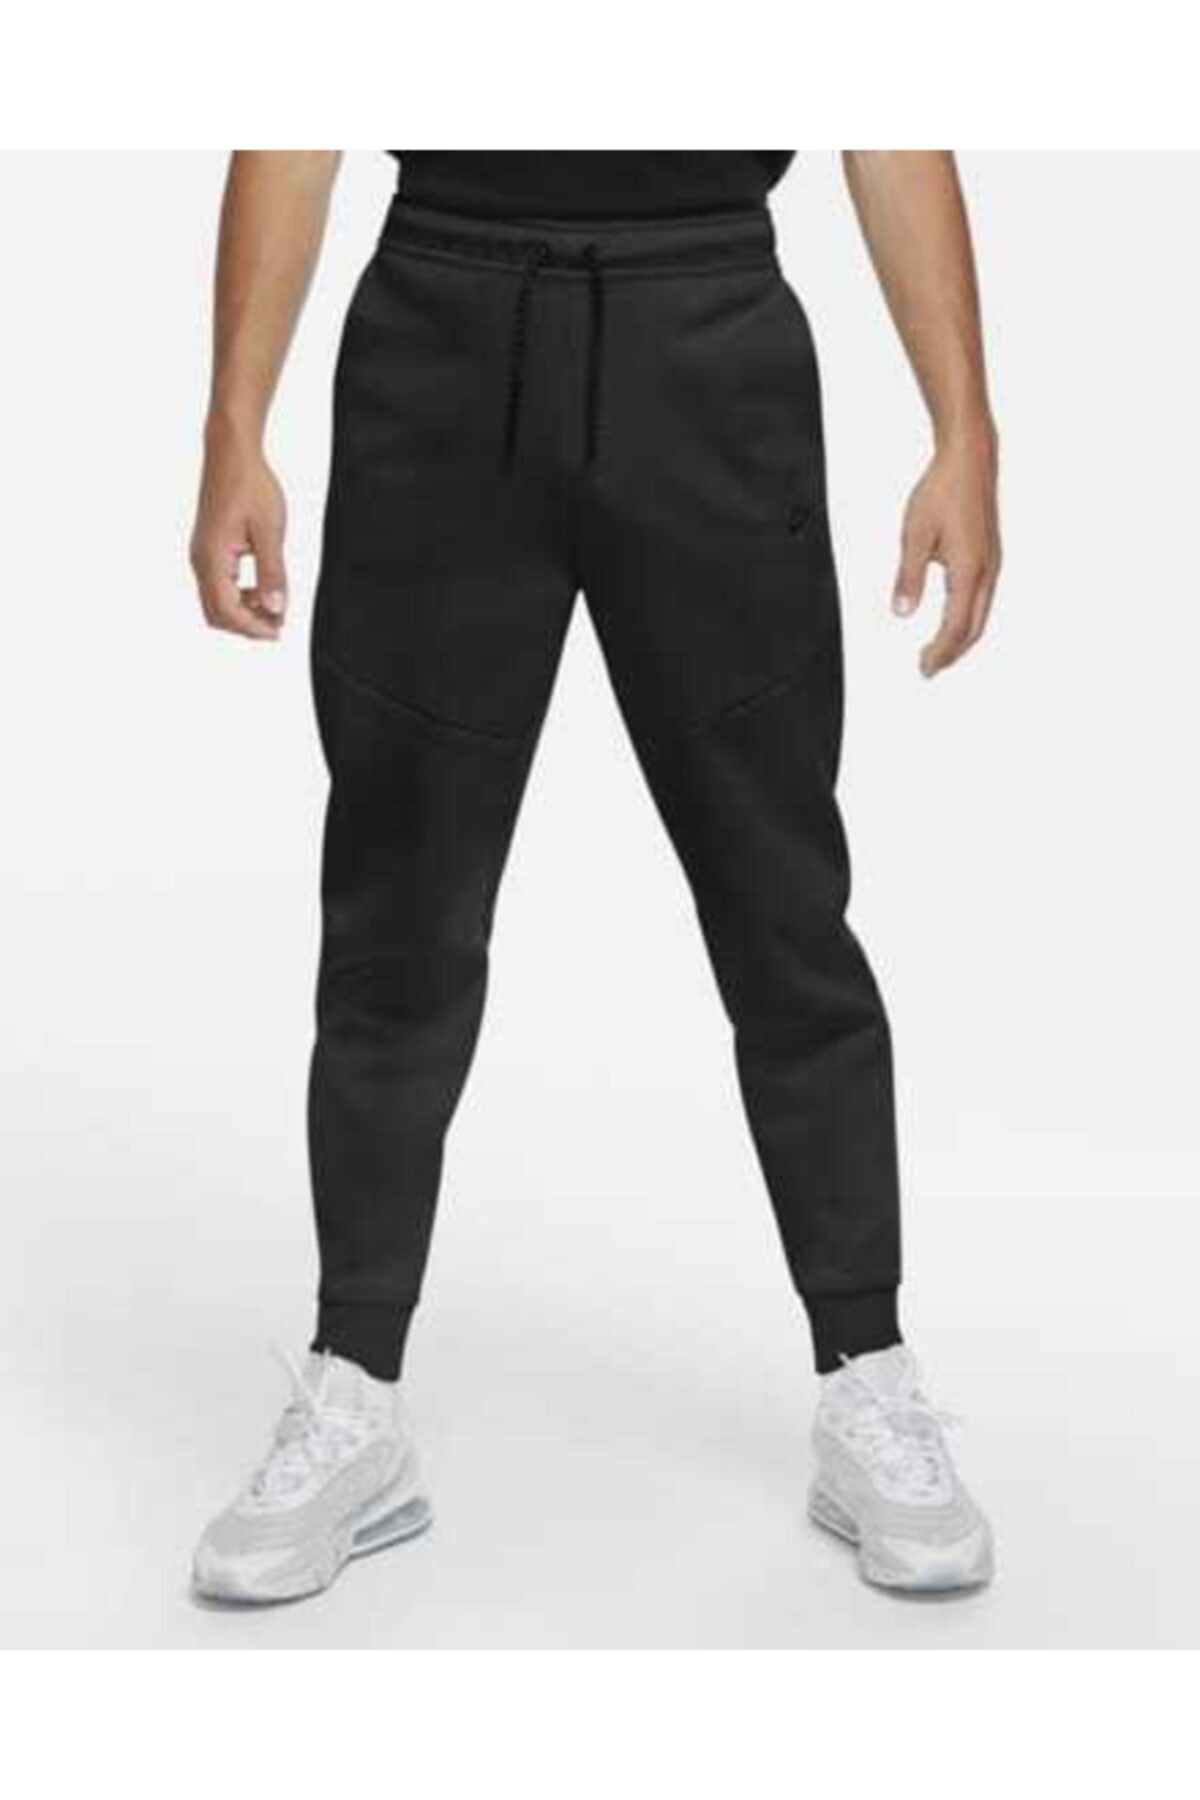 Nike Sportswear Tech Fleece Jogger Erkek Siyah Renk Eşofman Altı